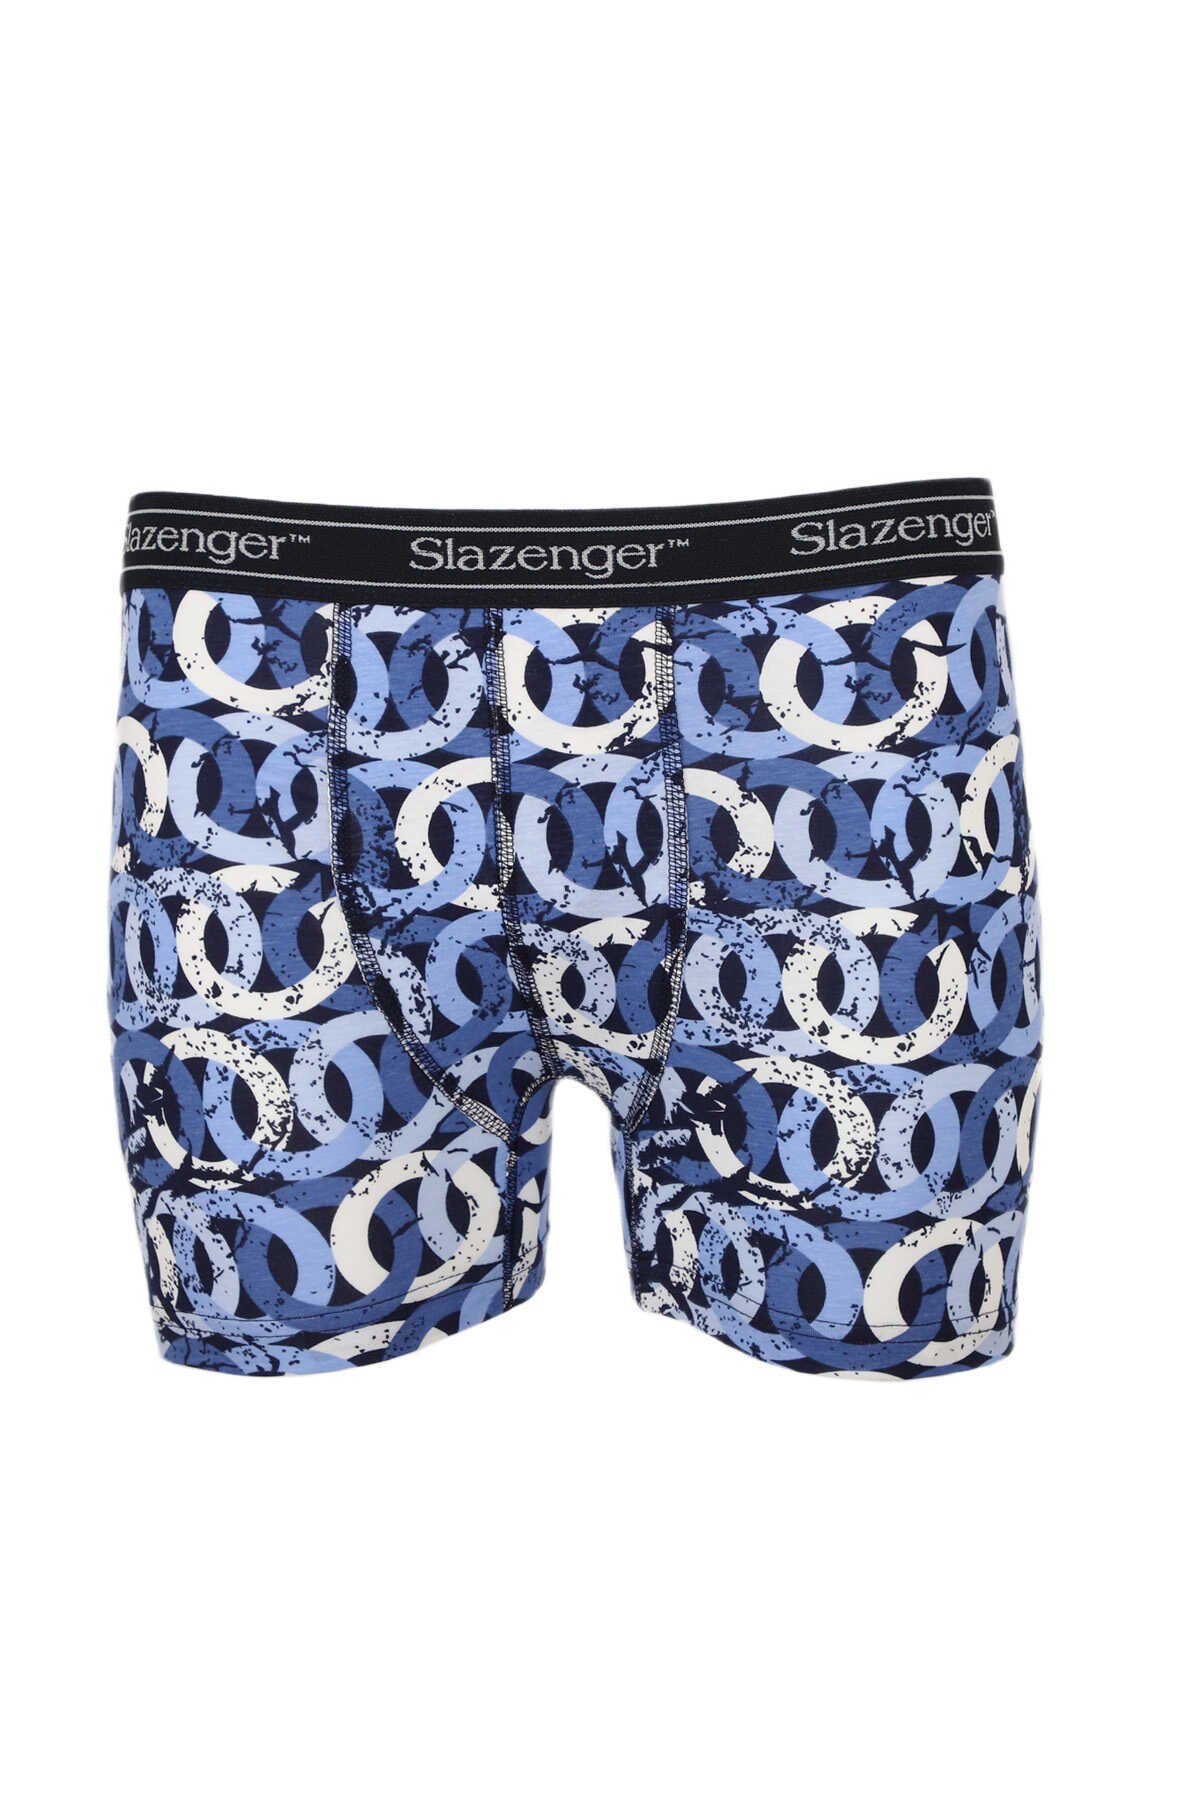 Slazenger - Slazenger JAMA Erkek Boxer İç Giyim Saks Mavi / Beyaz